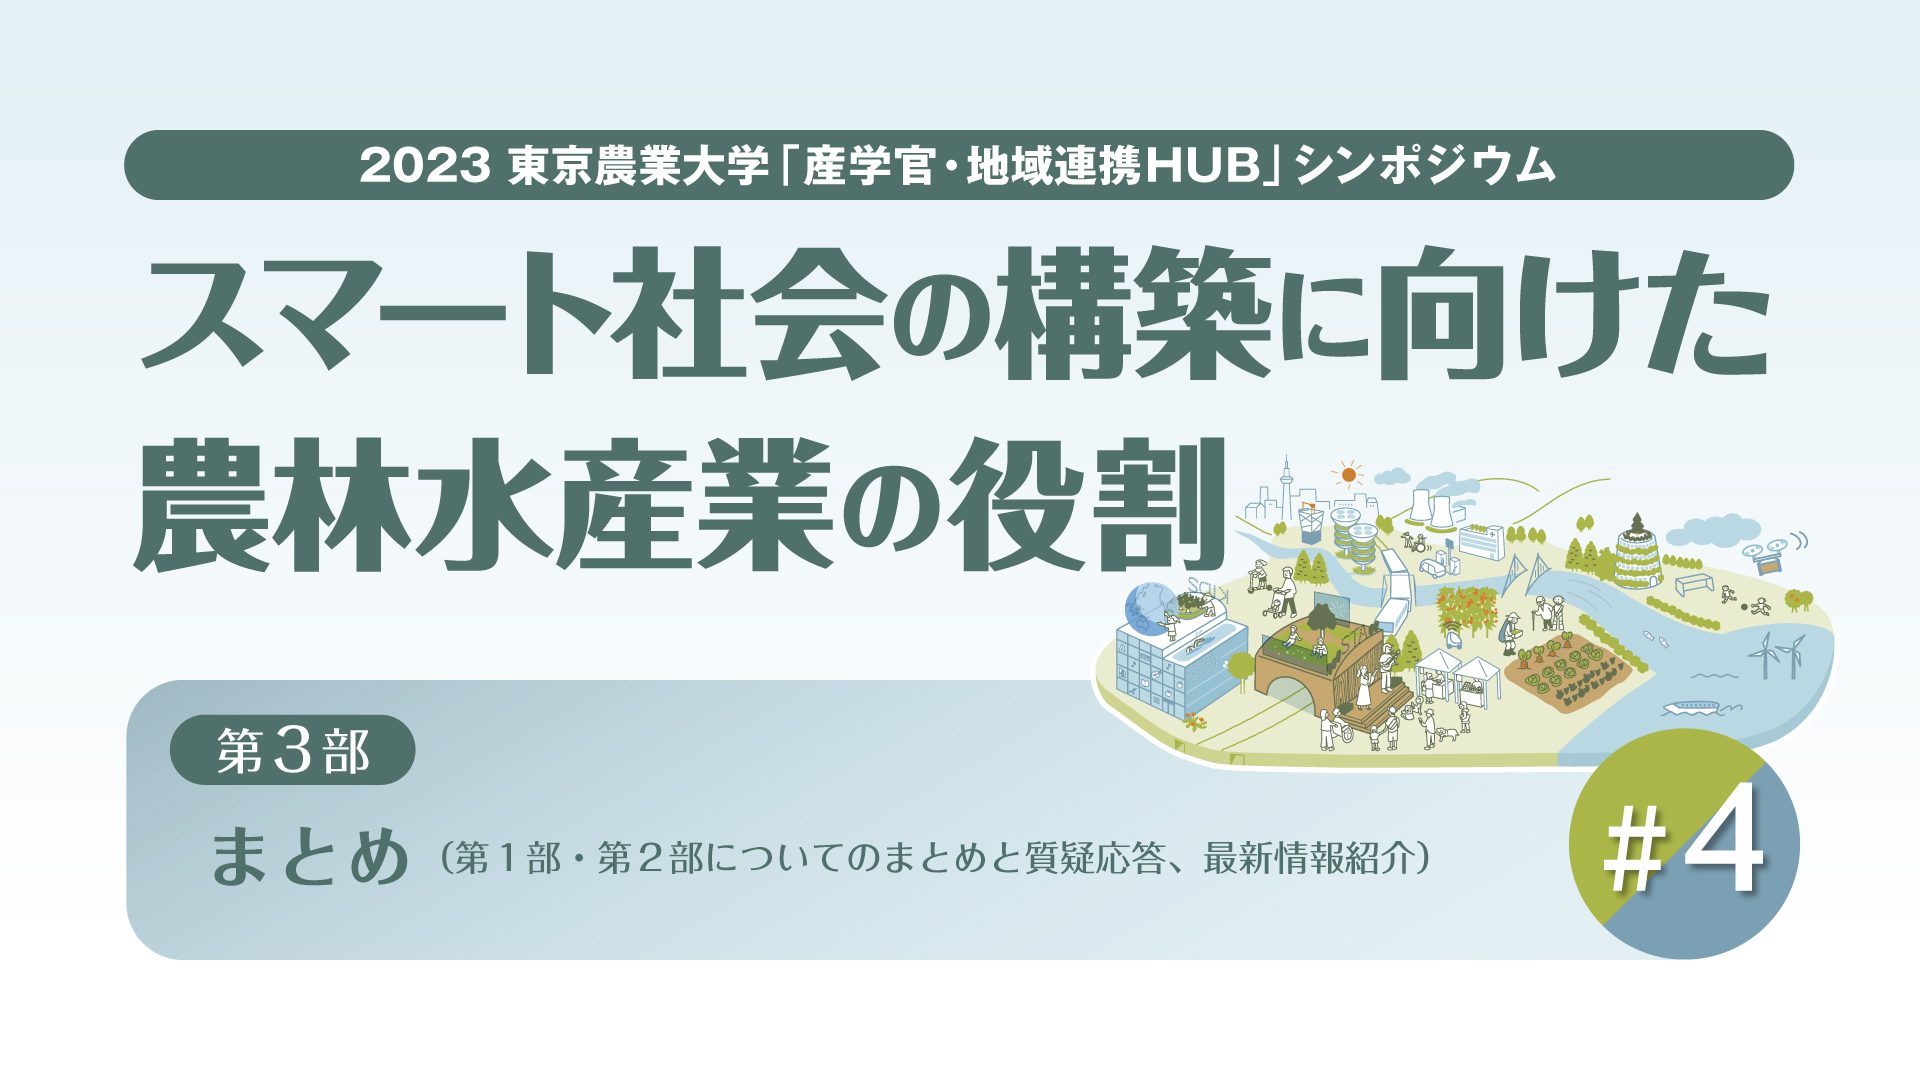 【#4 東京農業大学「産学官・地域連携HUB」シンポジウム / 2023年度 第2回】「スマート社会の構築に向けた農林水産業の役割」【第3部】